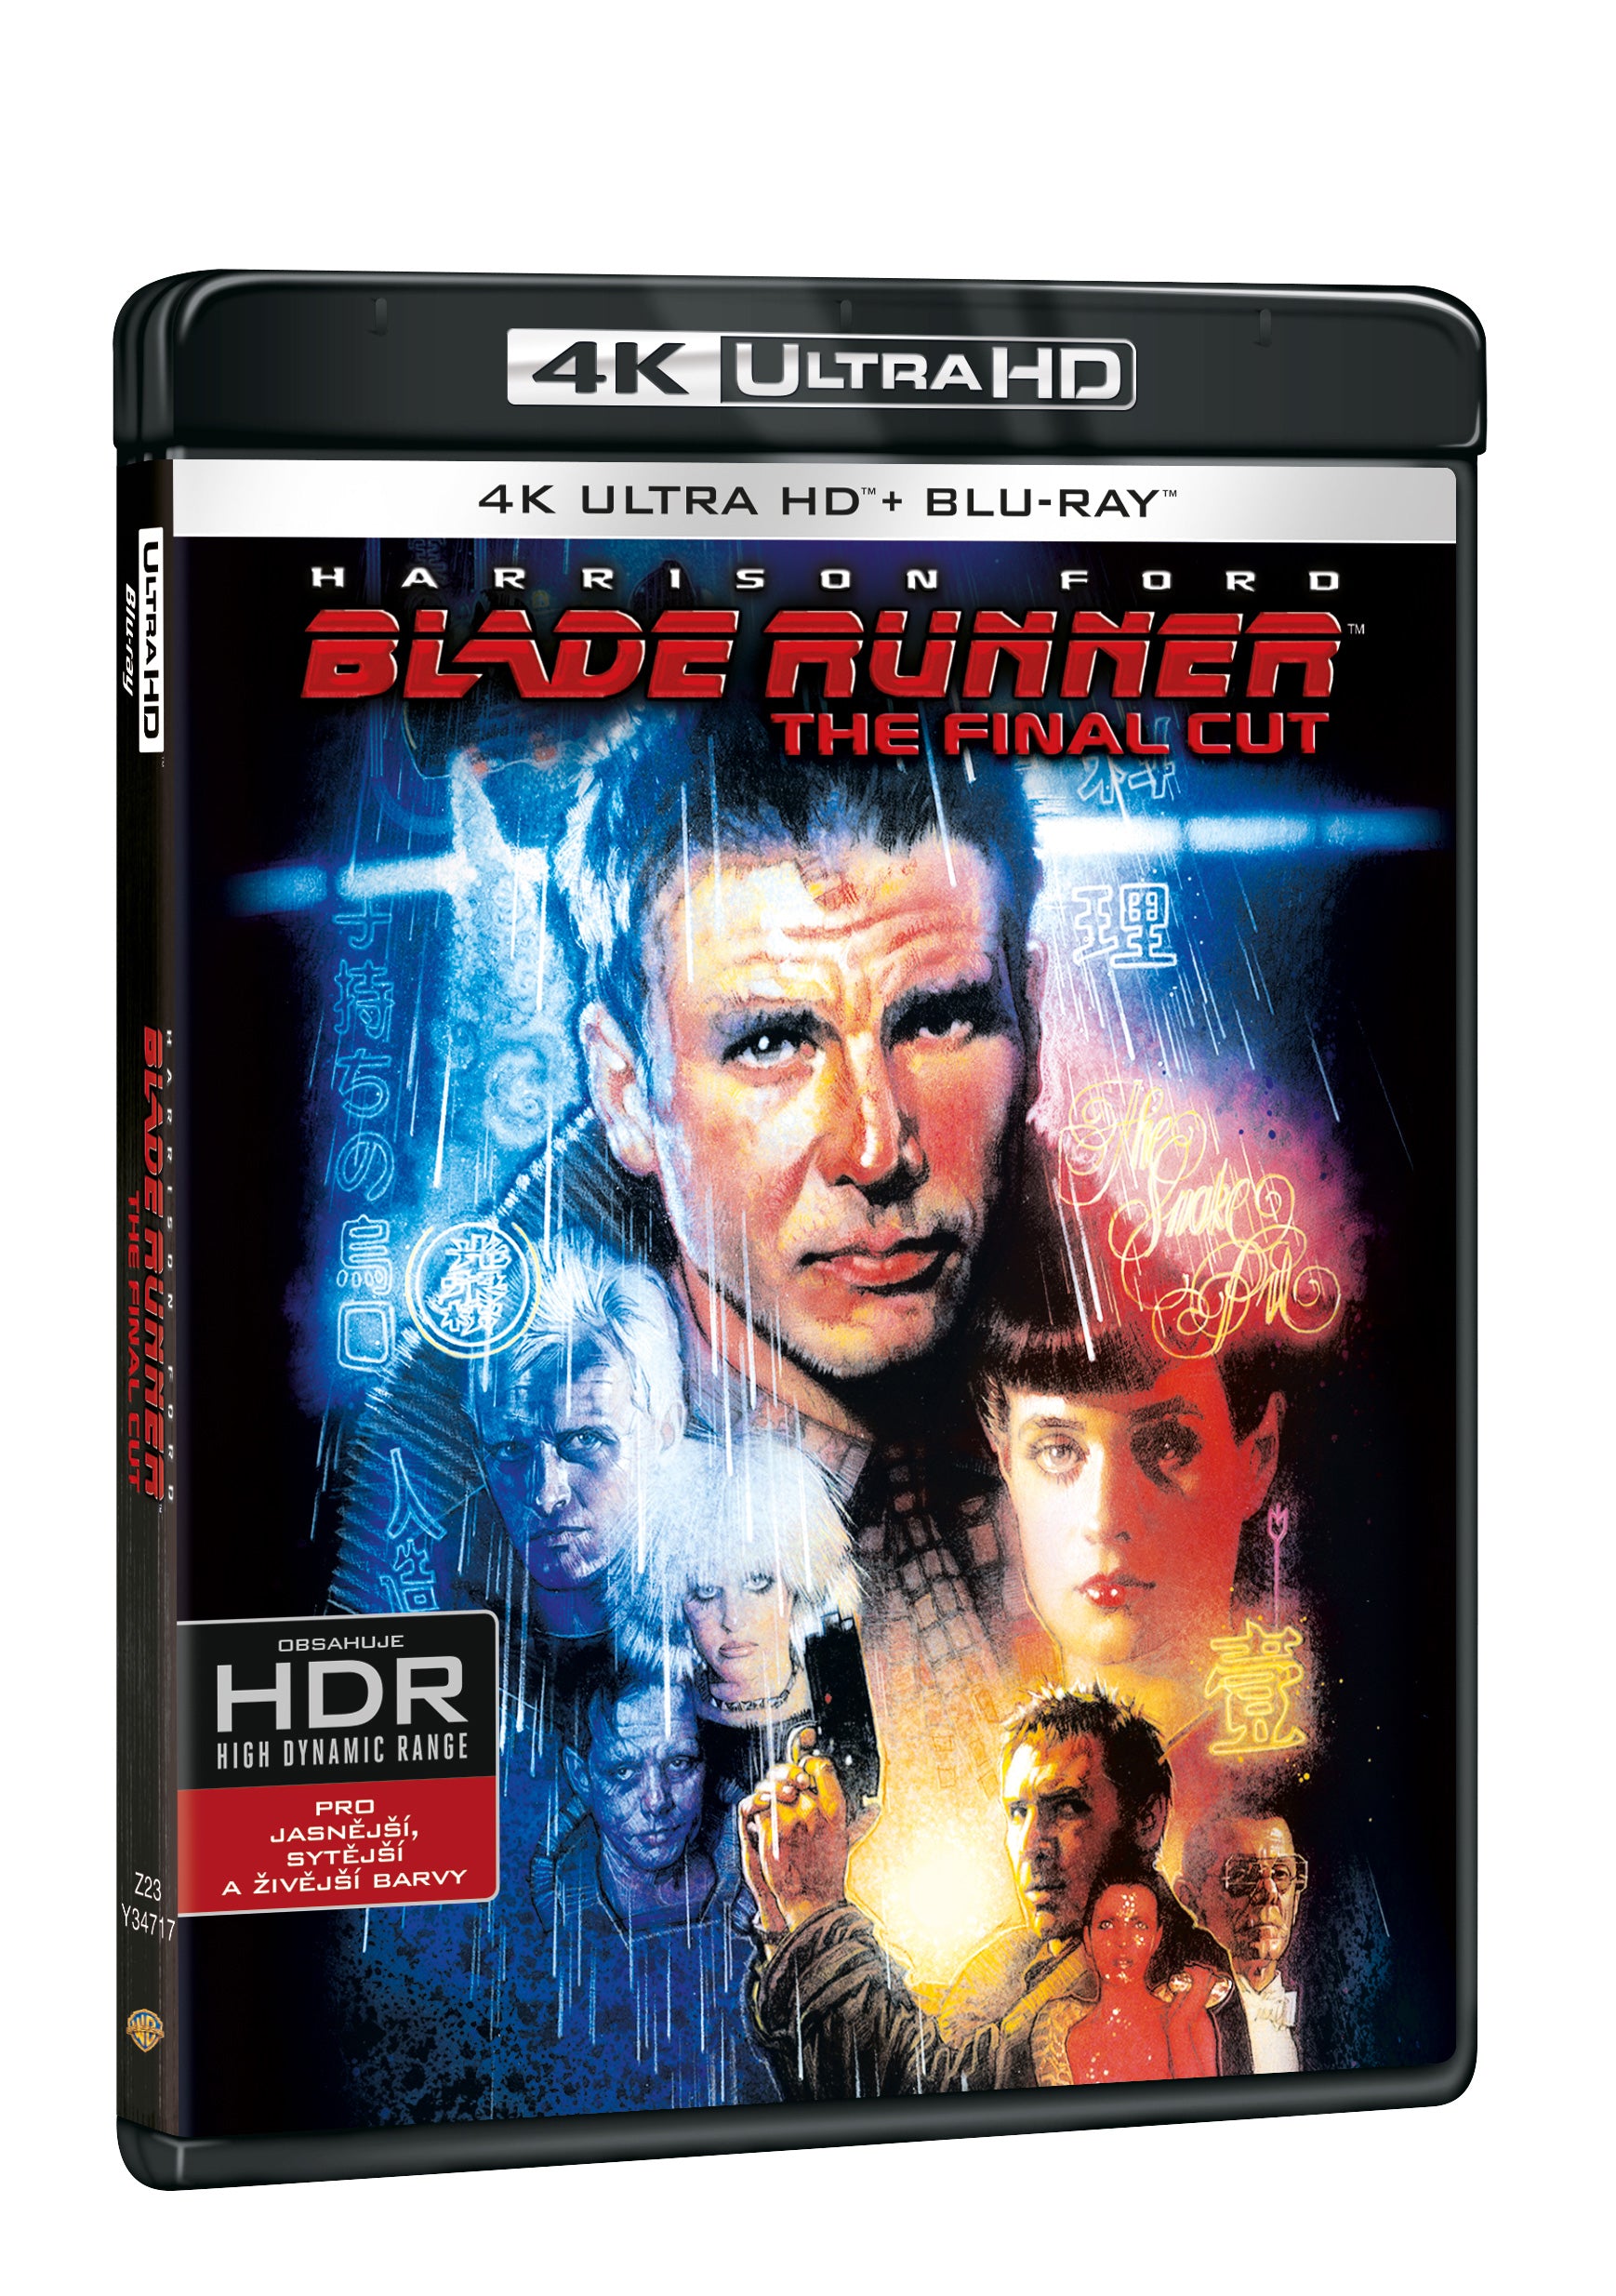 Blade Runner: The Final Cut 2BD+2DVD (UHD+BD+ 2DVD bonus disk) / Blade Runner: The Final Cut - Czech version